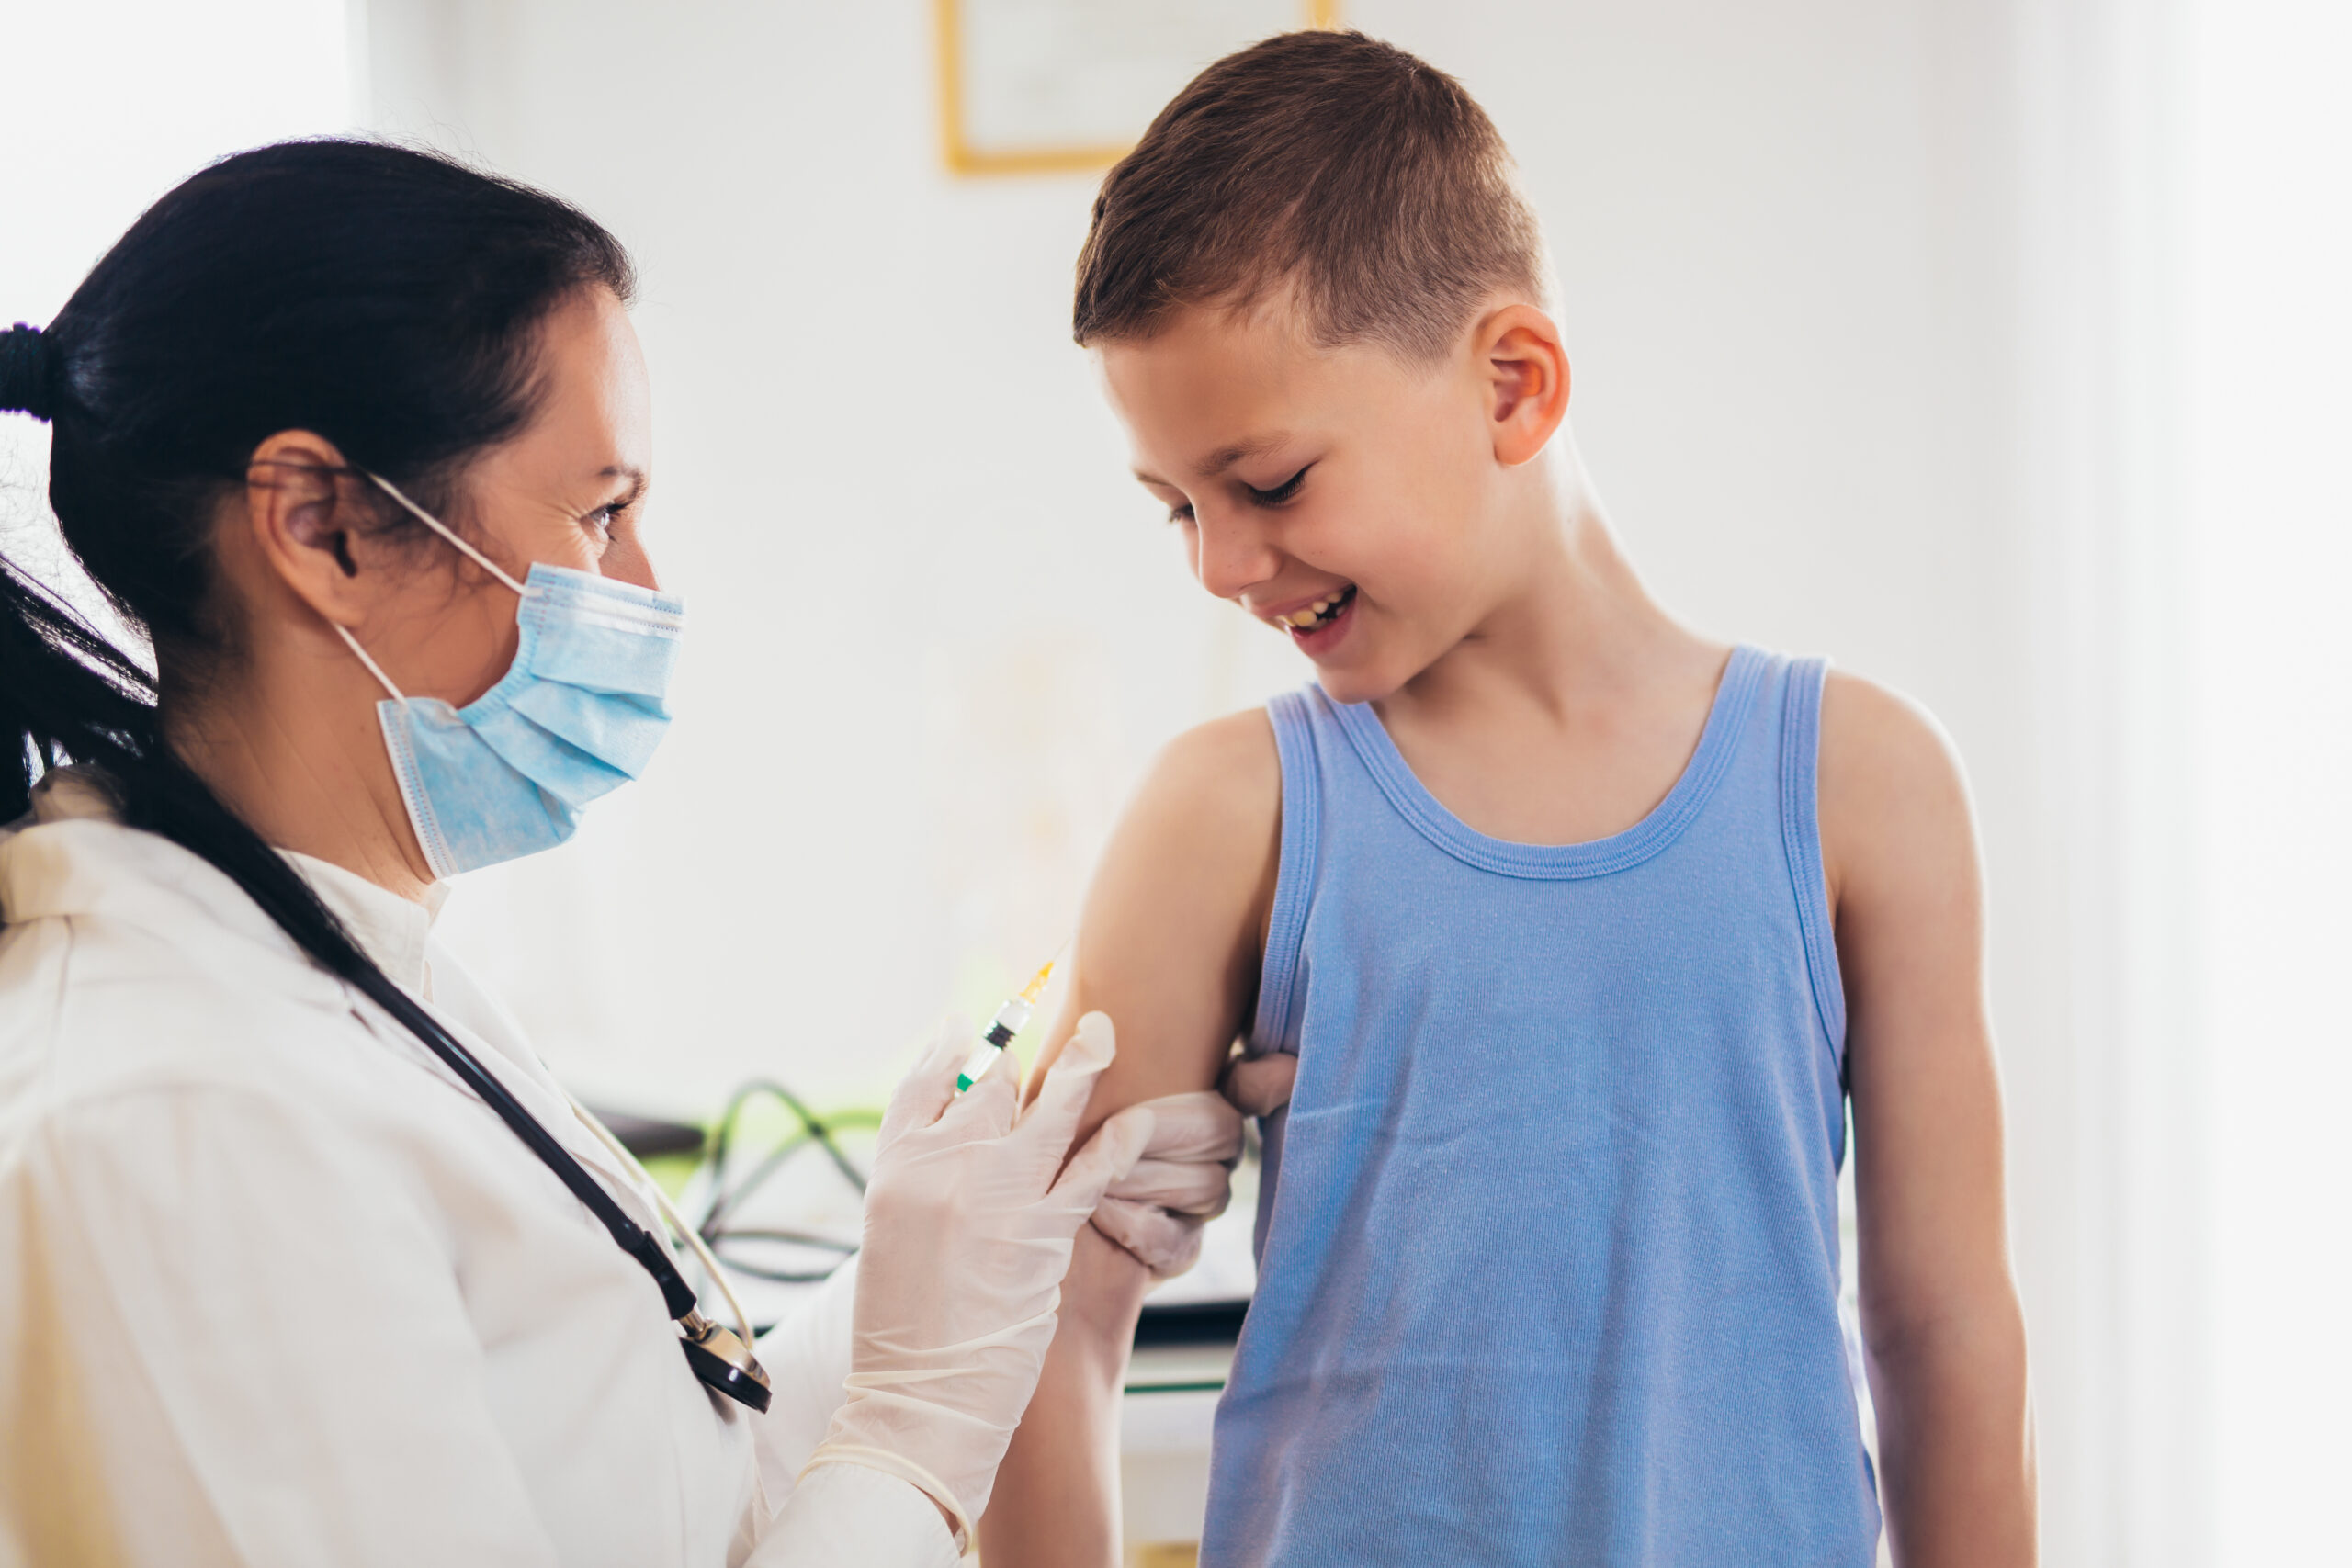 החל מהיום במכבי שירותי בריאות בקרית שמונה: חיסונים נגד נגיף הקורונה לגילאי 12-16